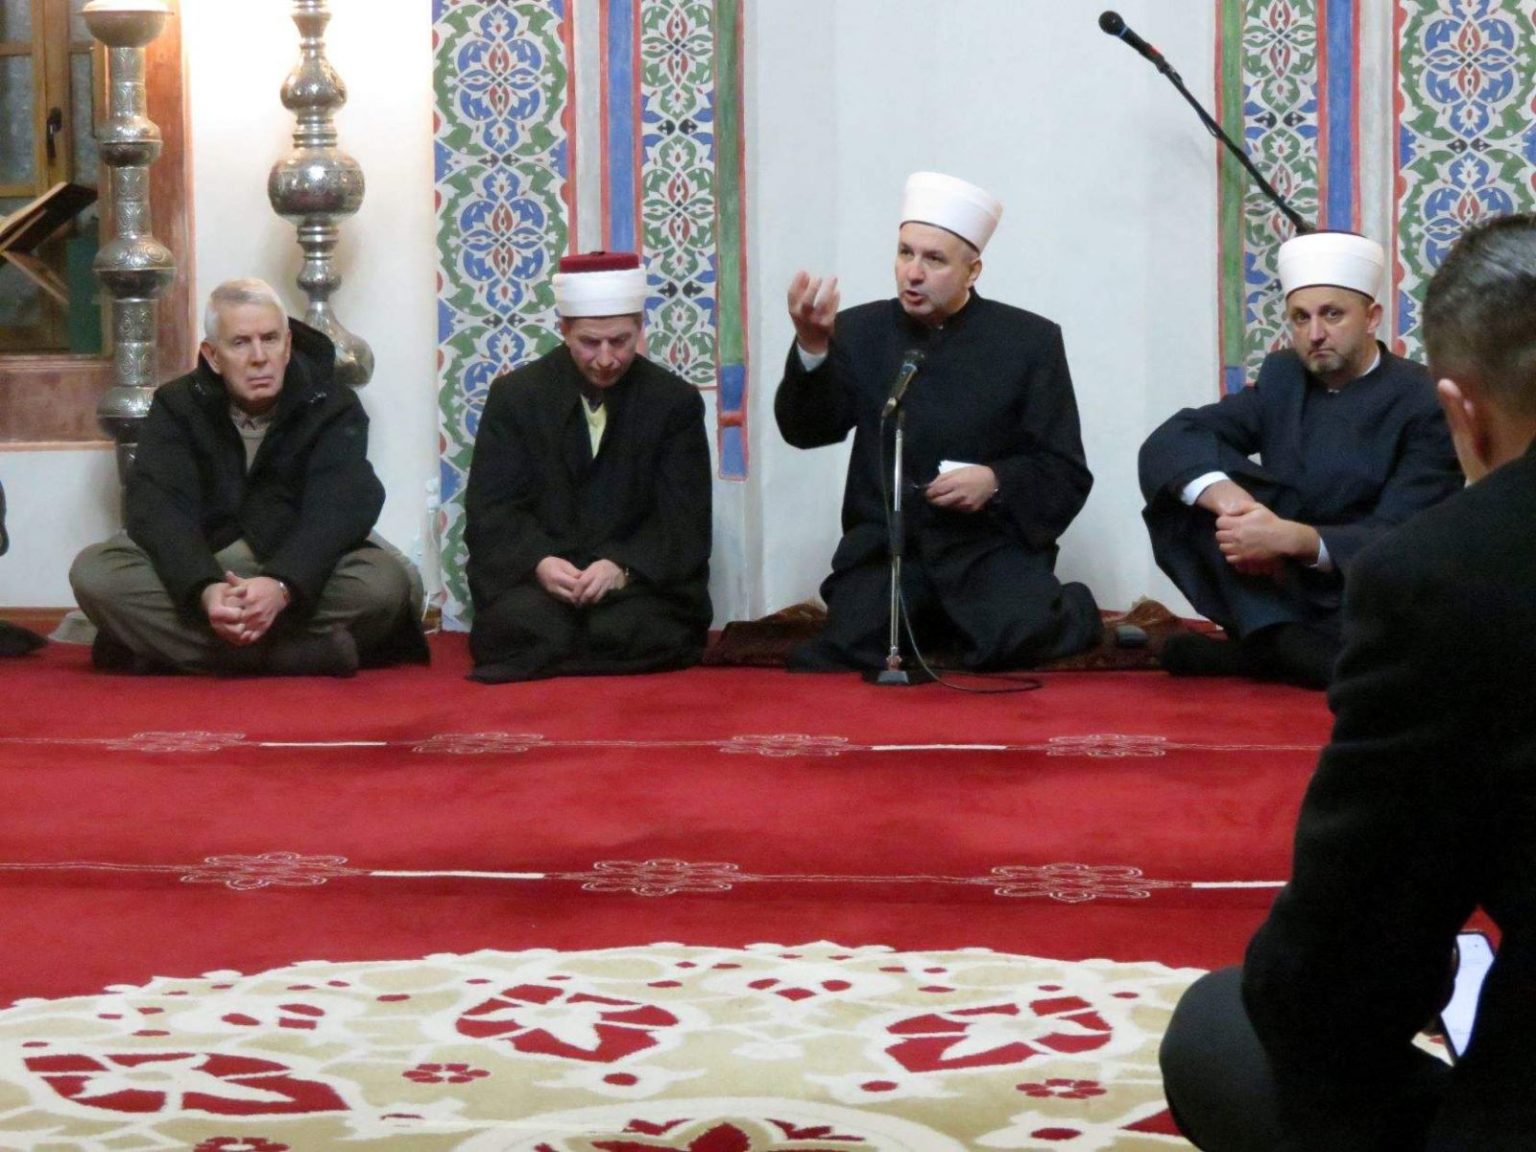 Tribina “Islamske teme” – Muftija Grabus podsjetio na univerzalna pitanja u učenjima bosanskohercegovačke uleme